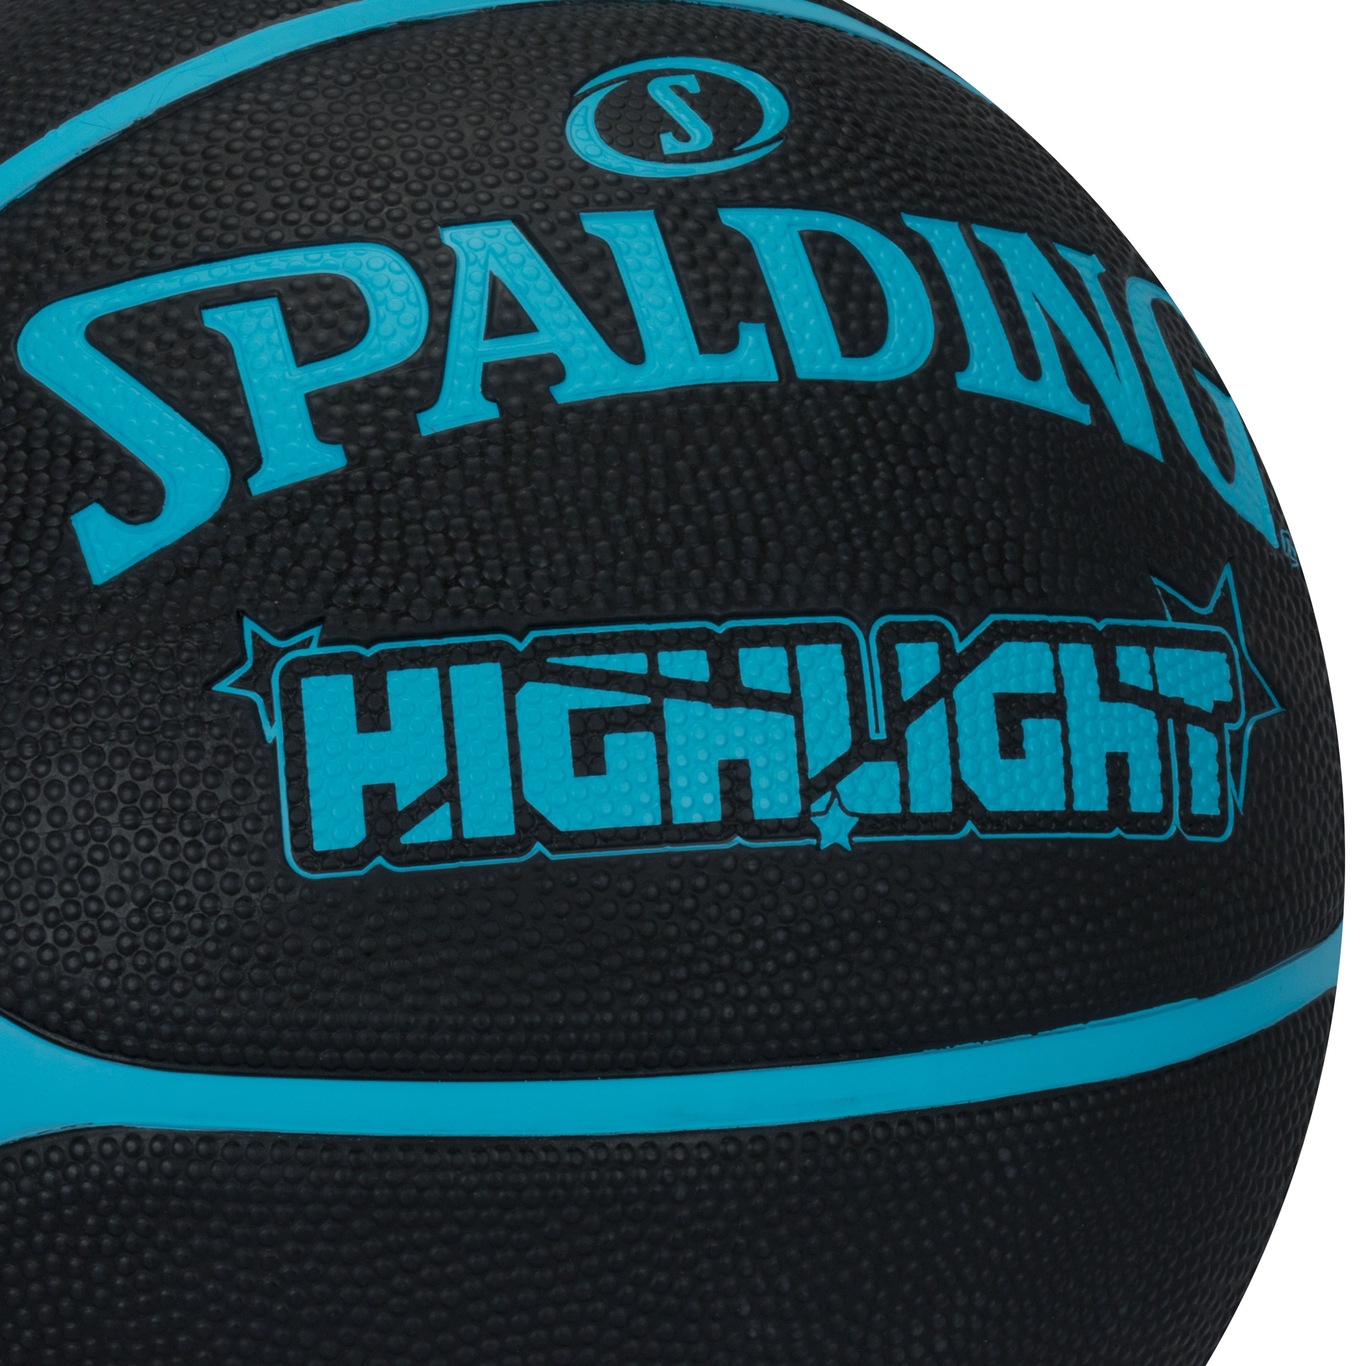 Bola de Basquete Spalding Highlight